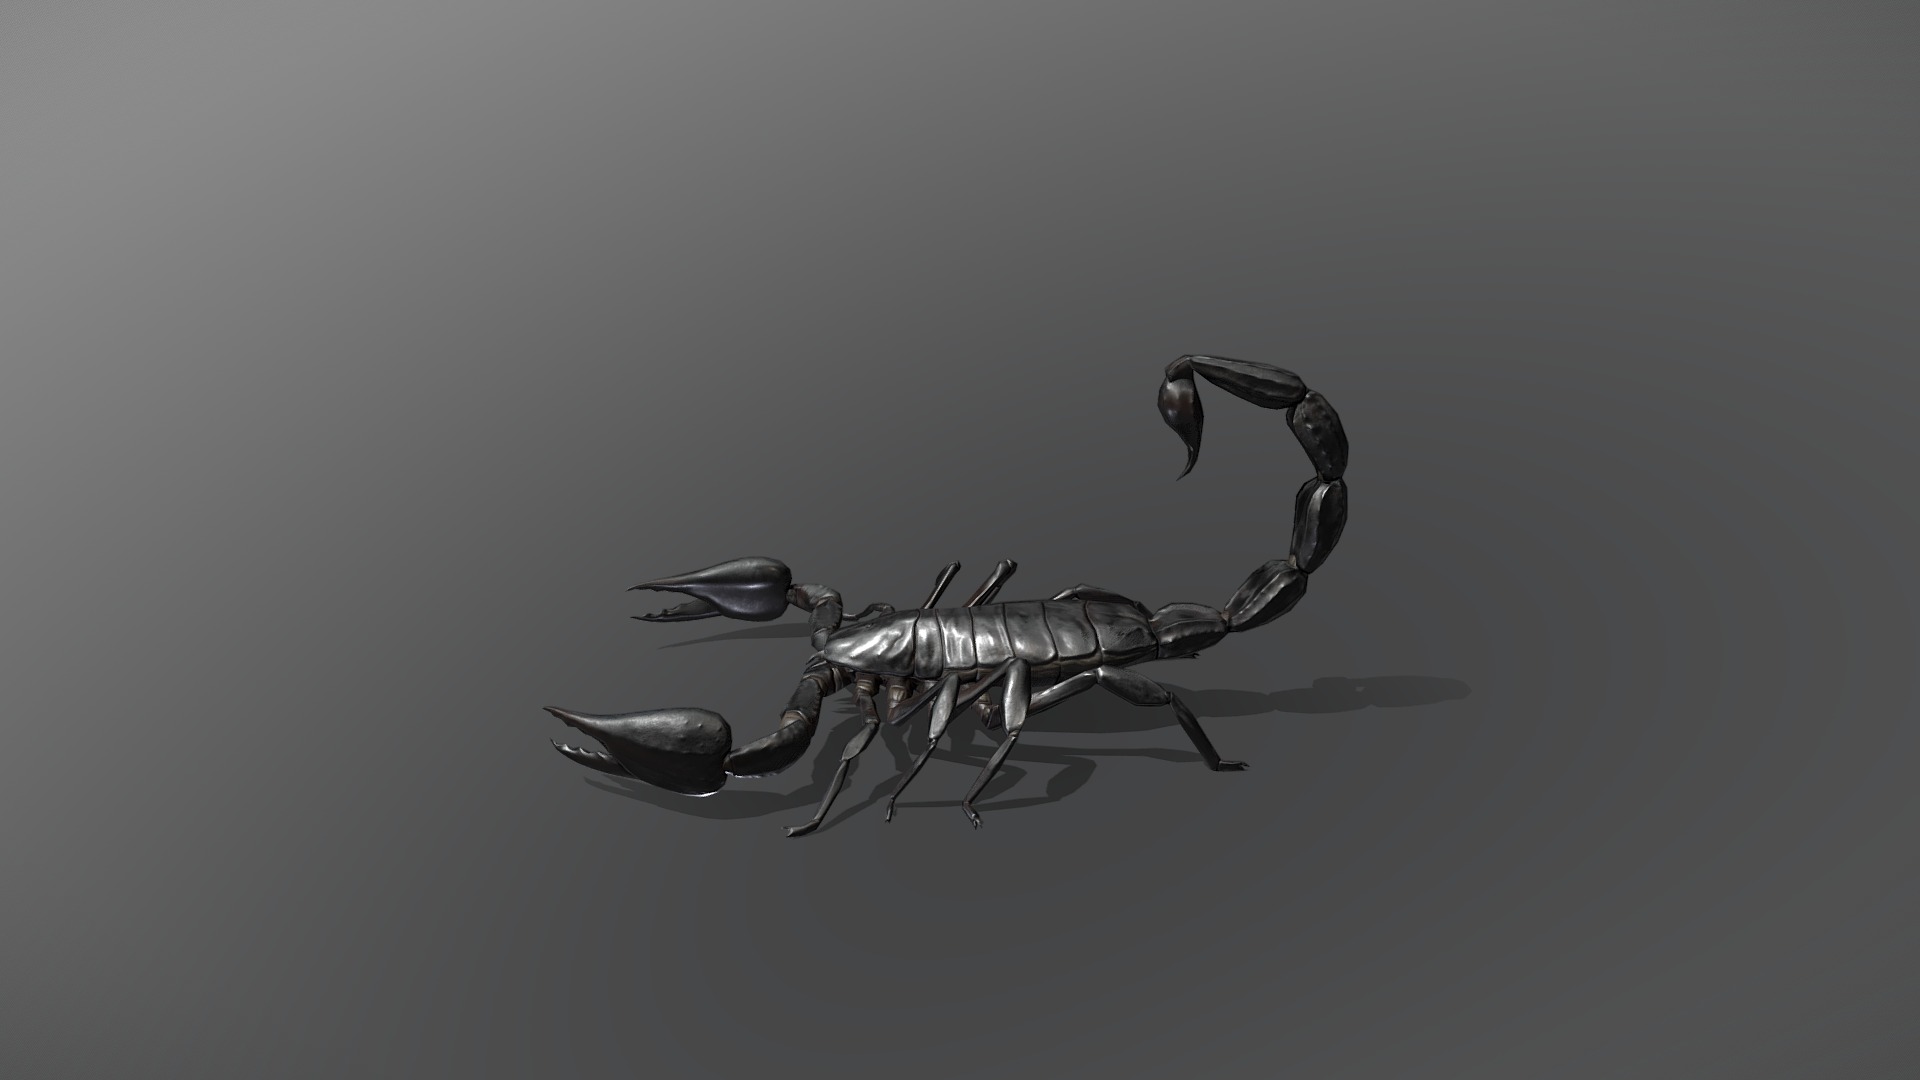 Optimized photorealistic model of black scorpion.
20k tris - Black Scorpion - 3D model by Teli 3d model